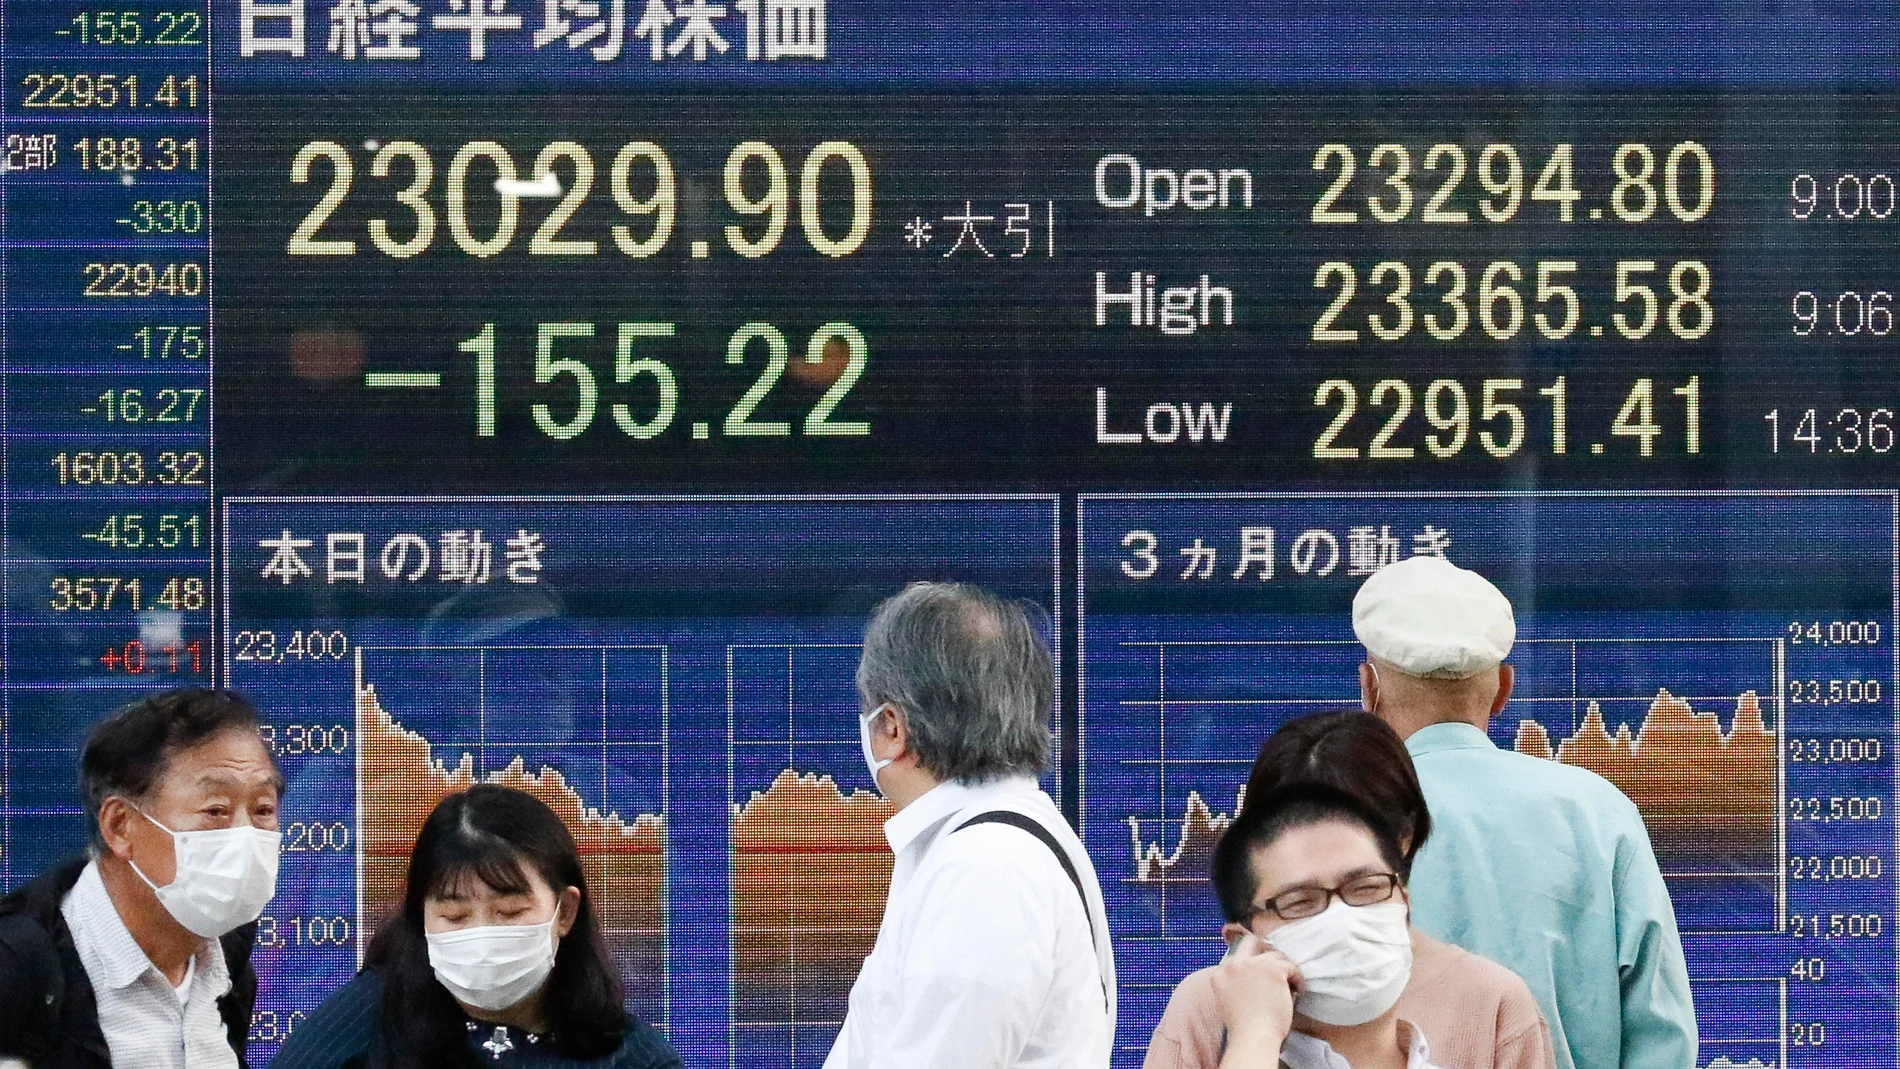 Tokio: Personas con mascarillas para evitar la propagación del coronavirus pasan por delante de un tablero electrónico que muestra la media bursátil japonesa Nikkei